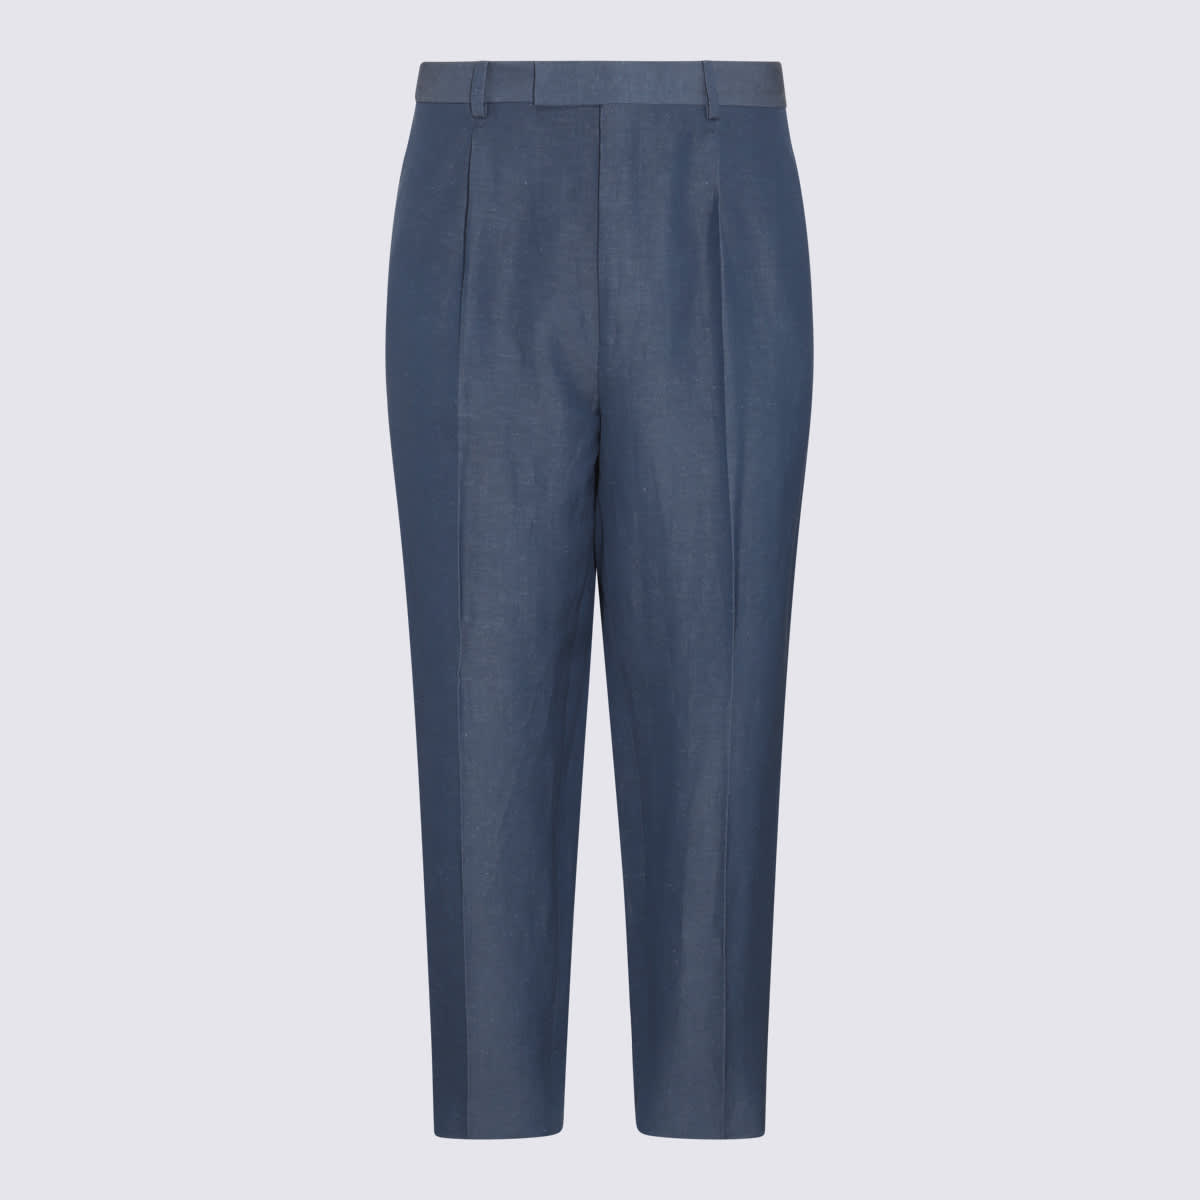 Zegna Blue Wool Pants